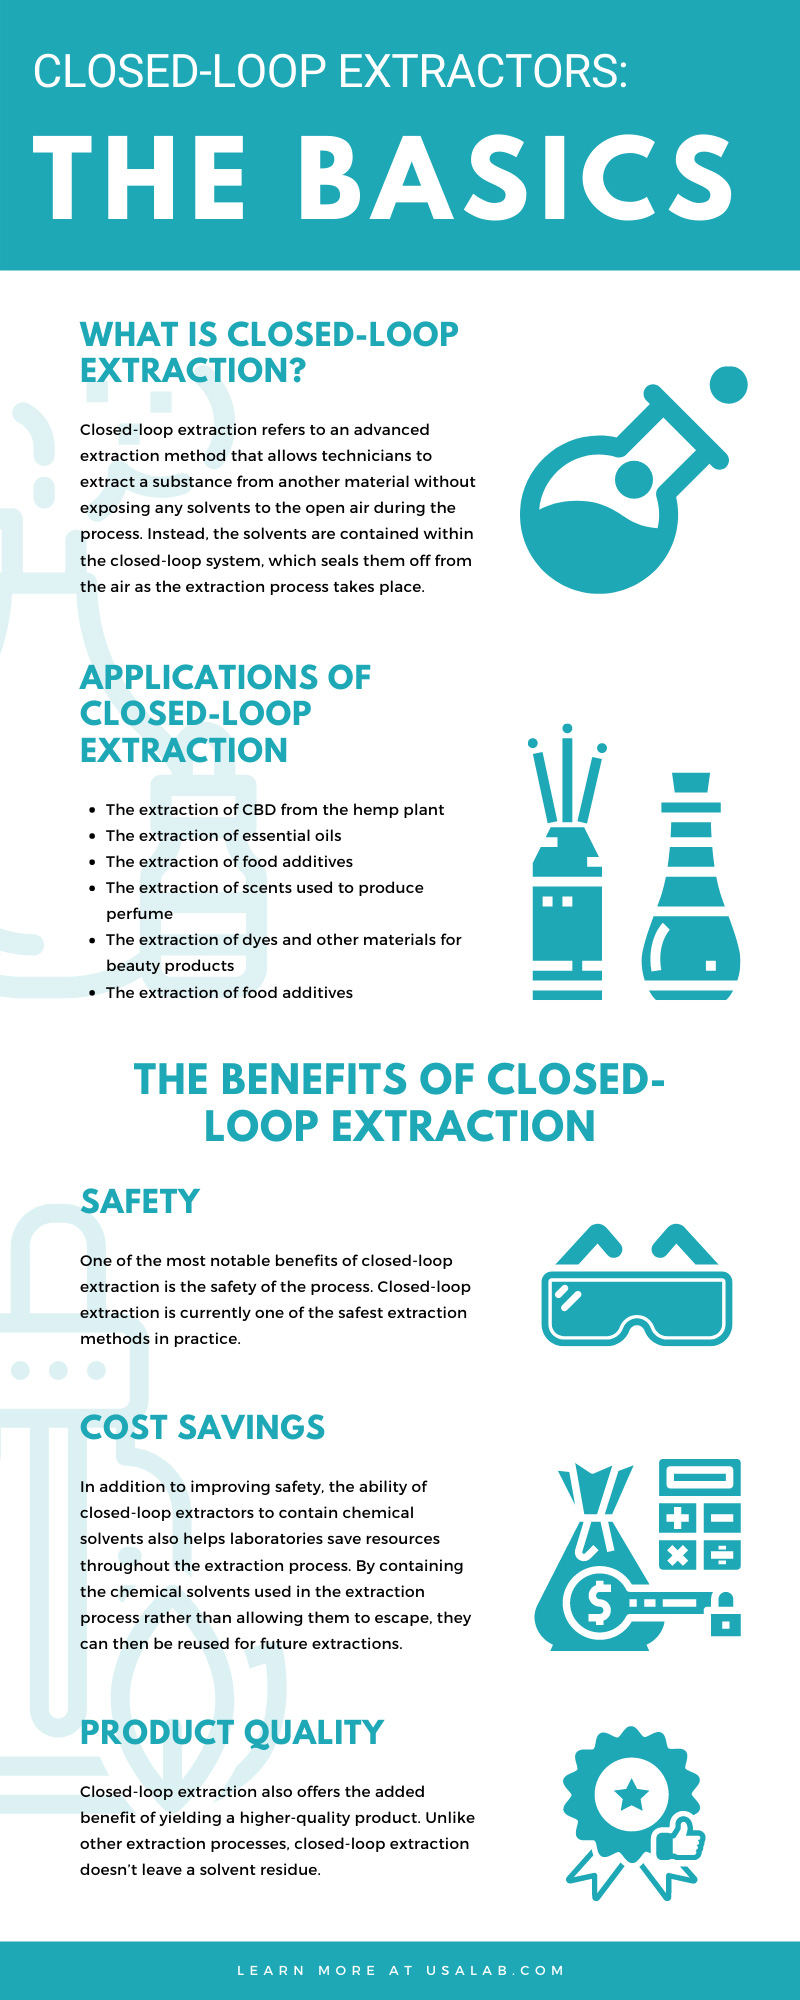 Closed-Loop Extractors: The Basics